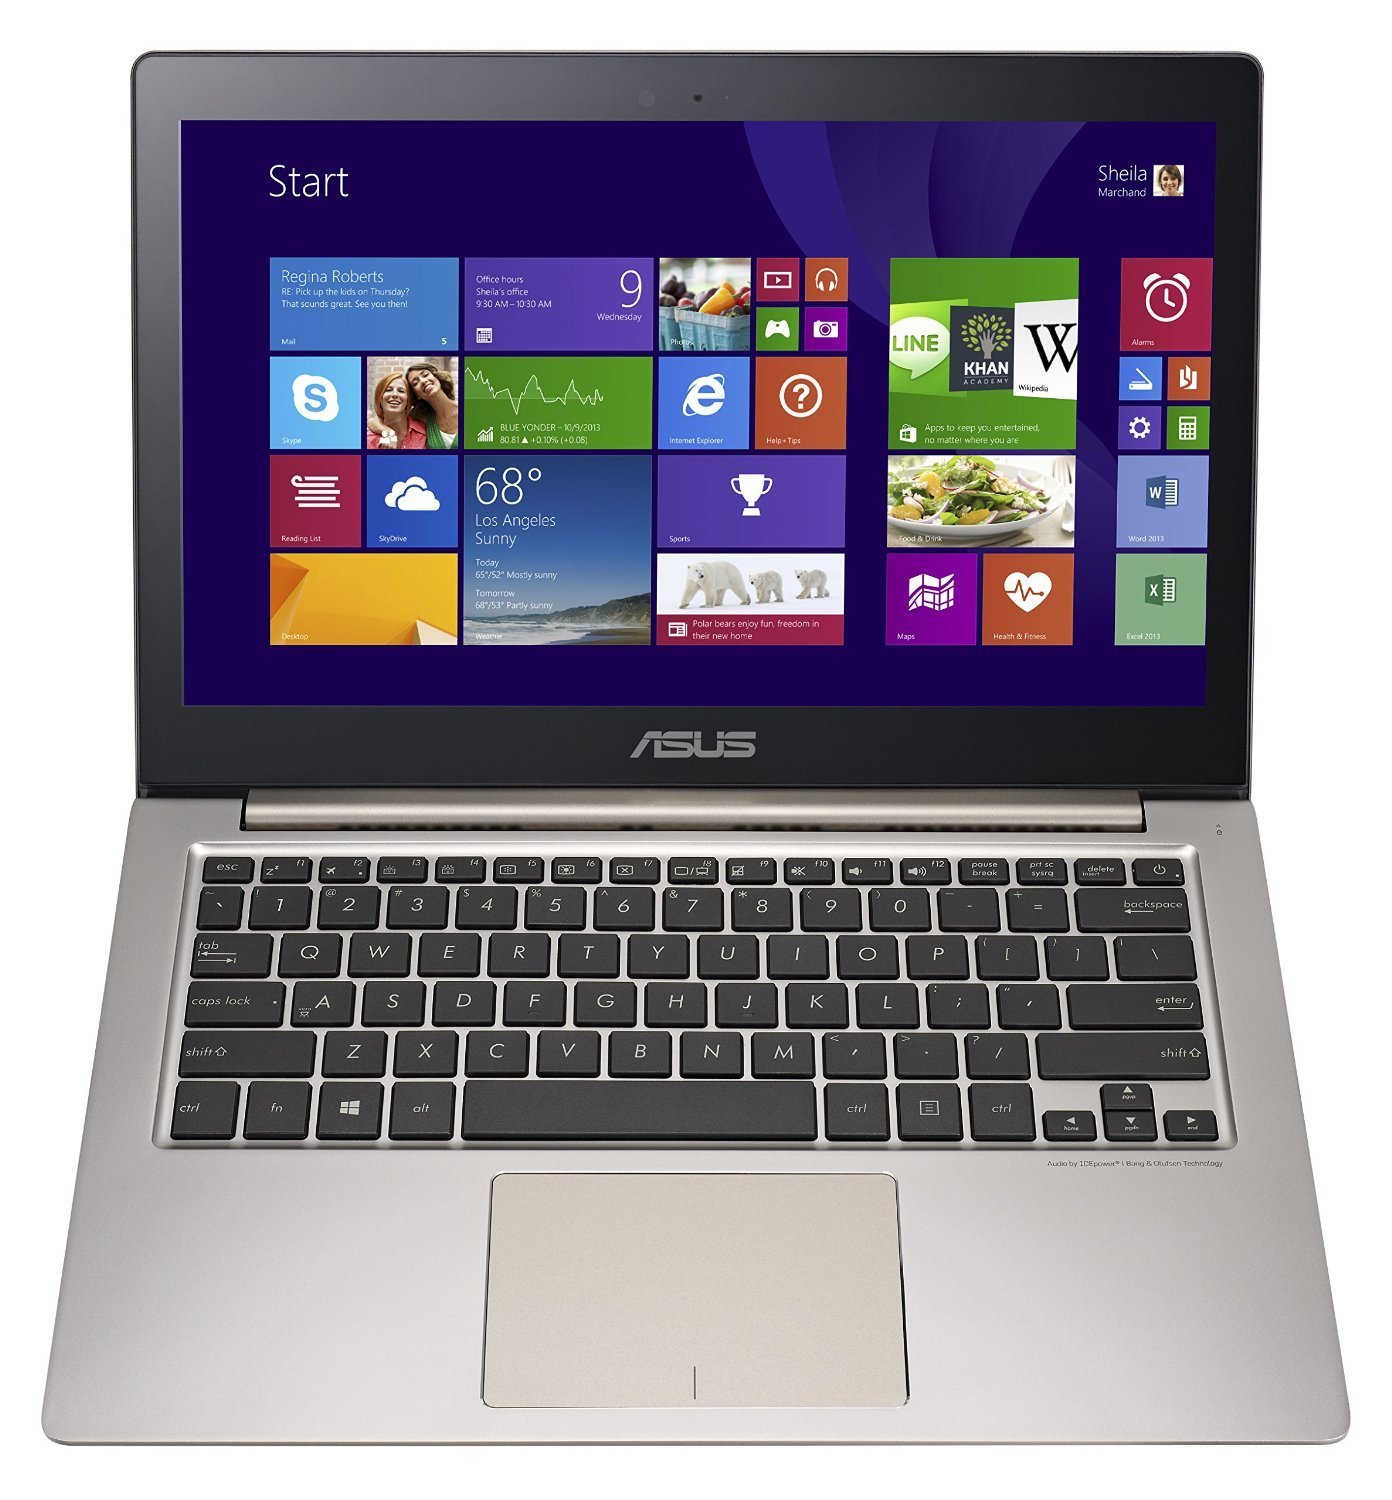 ASUS Zenbook UX303LA-US51T QHD+ Touch Laptop